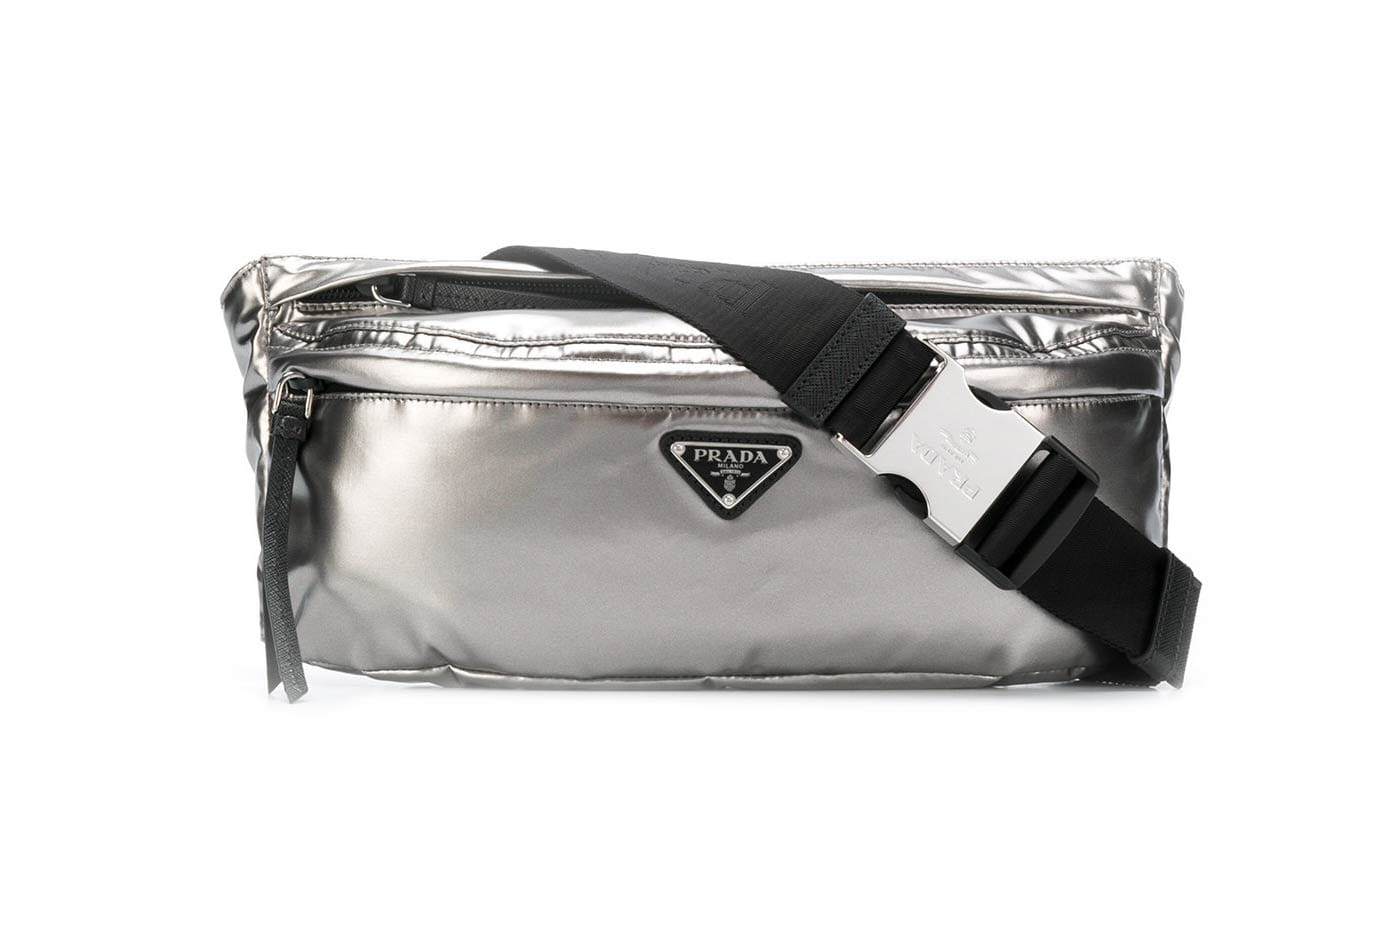 Prada's Logo Plaque Belt Bag Arrives in 